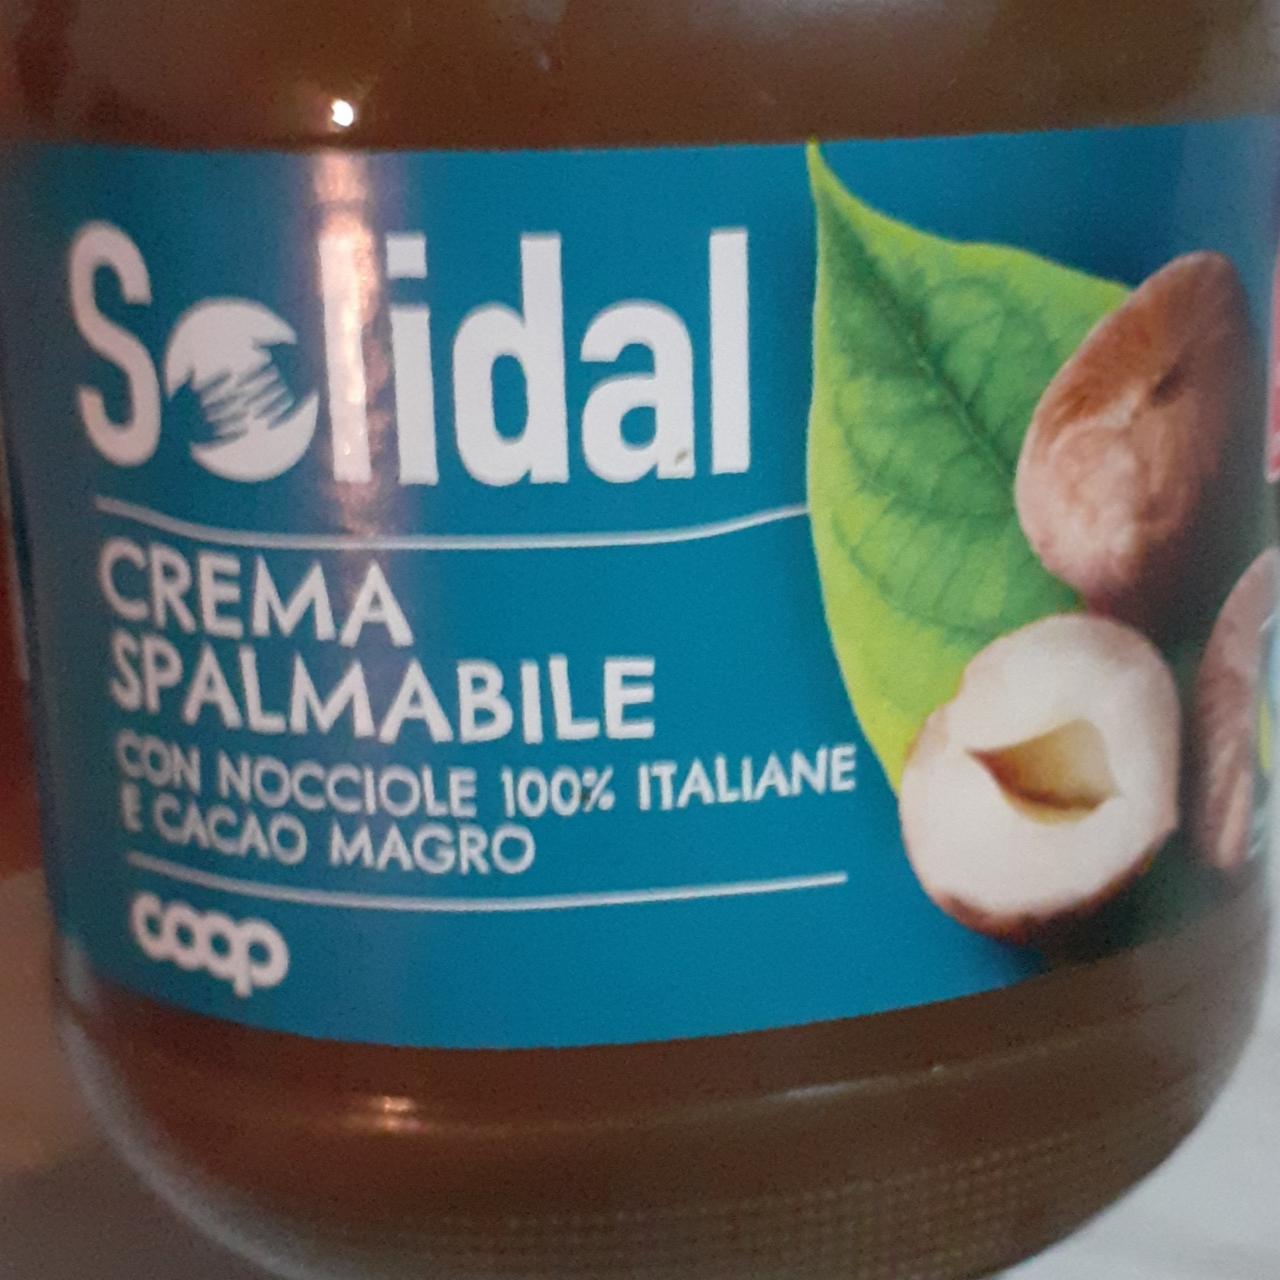 Фото - Crema Spalmabile con Nocciole 100% Italiane e Cacao Magro Solidal Coop